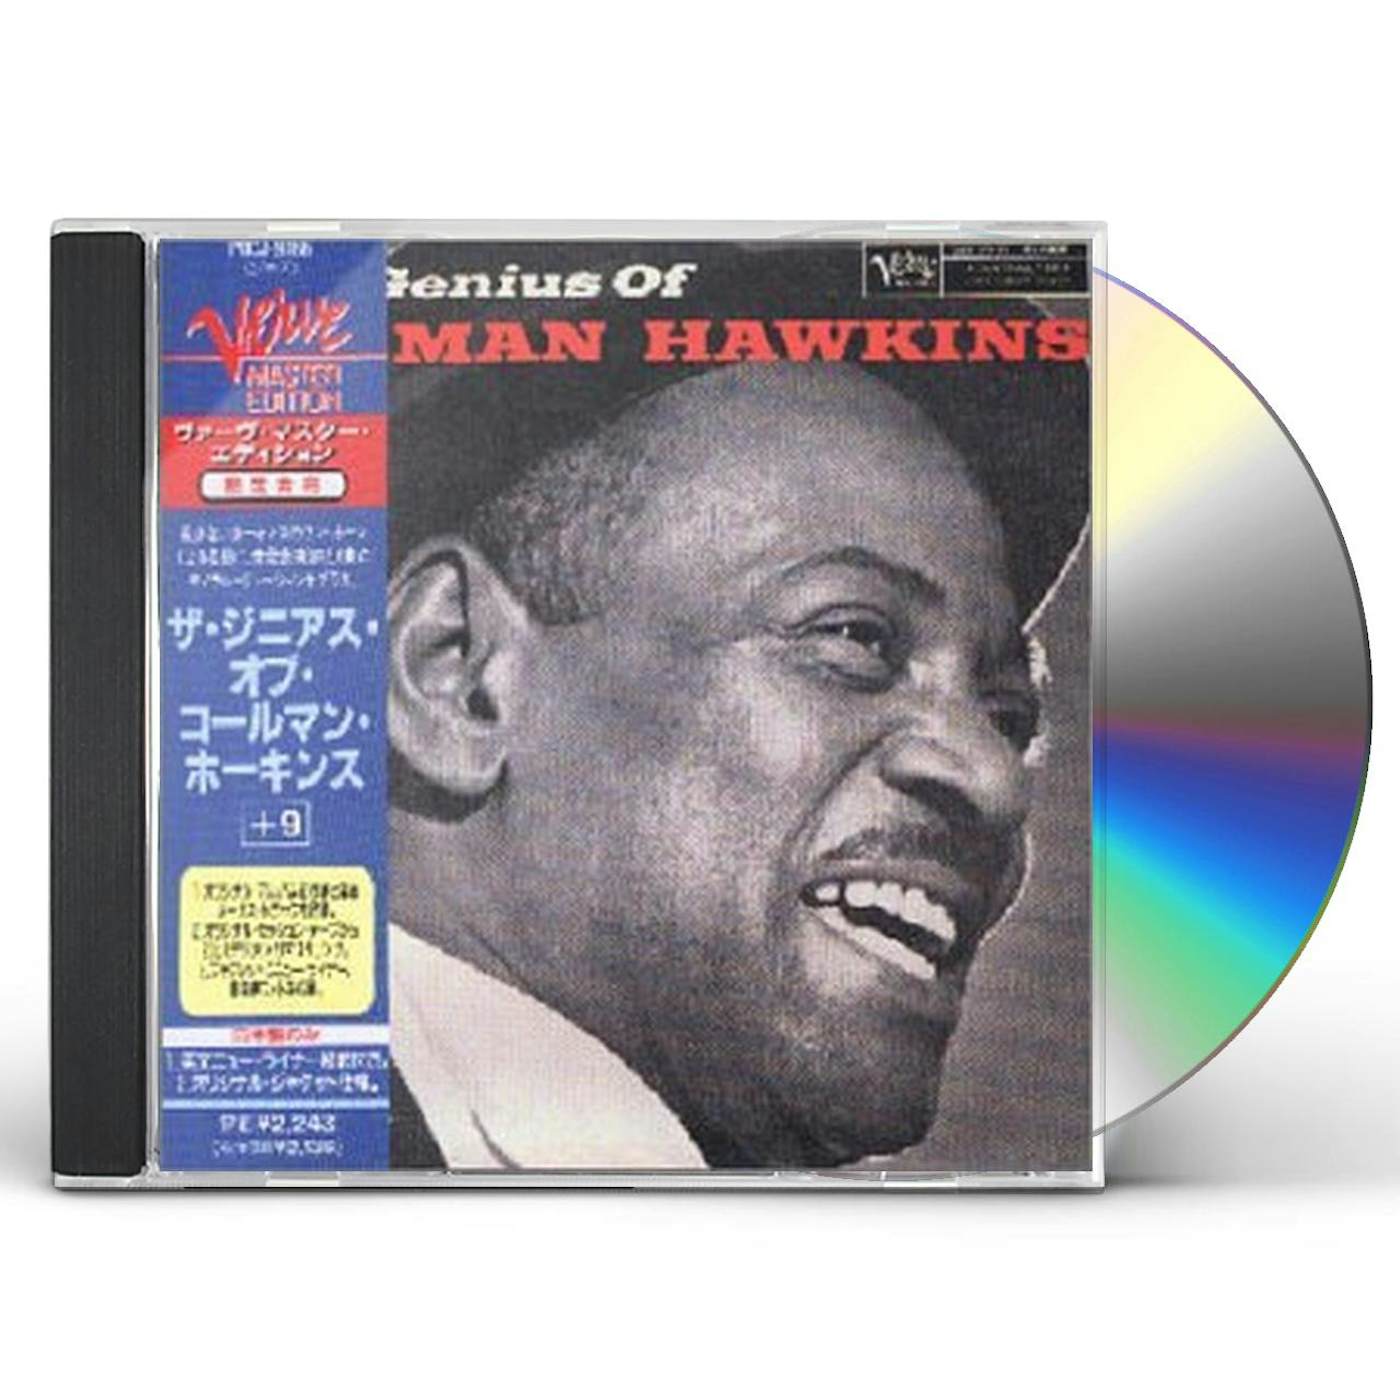 Coleman Hawkins GENIUS OF CD